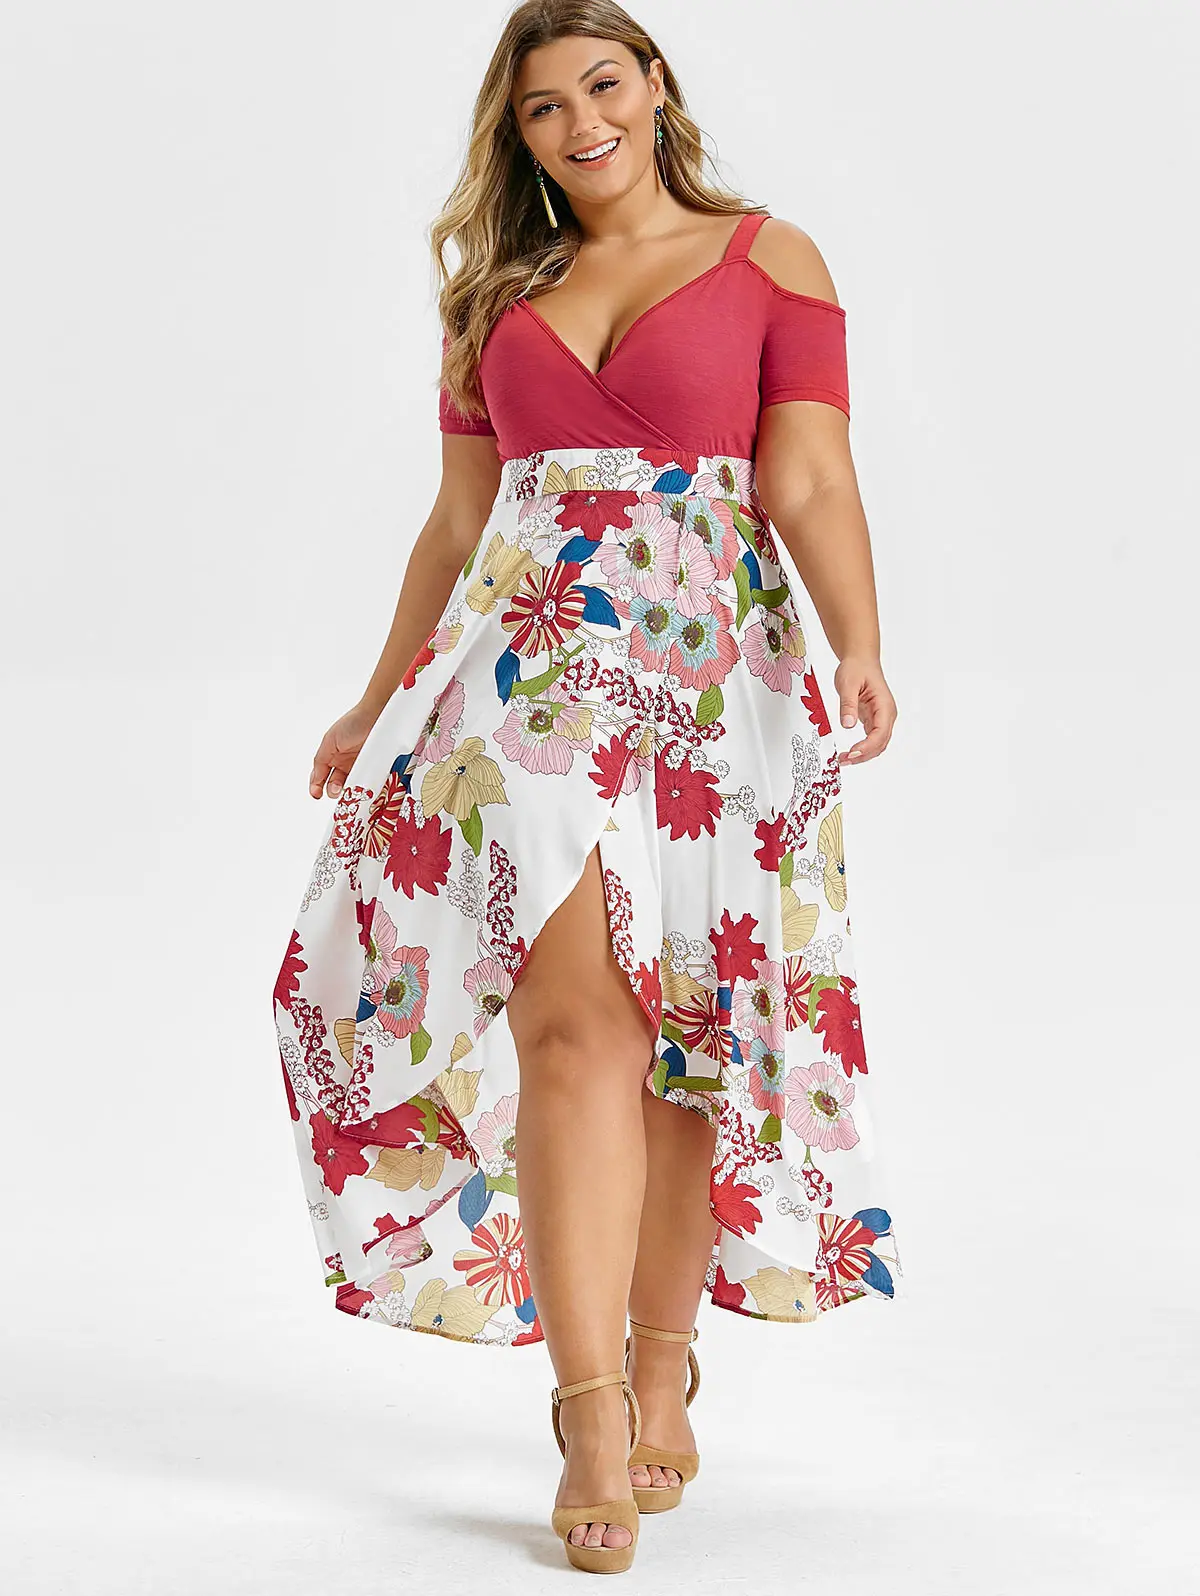 Rosegal размера плюс с открытыми плечами цветочное нахлест Макси Платье асимметричное с короткими рукавами с вырезами Высокая талия v-образным вырезом богемное платье